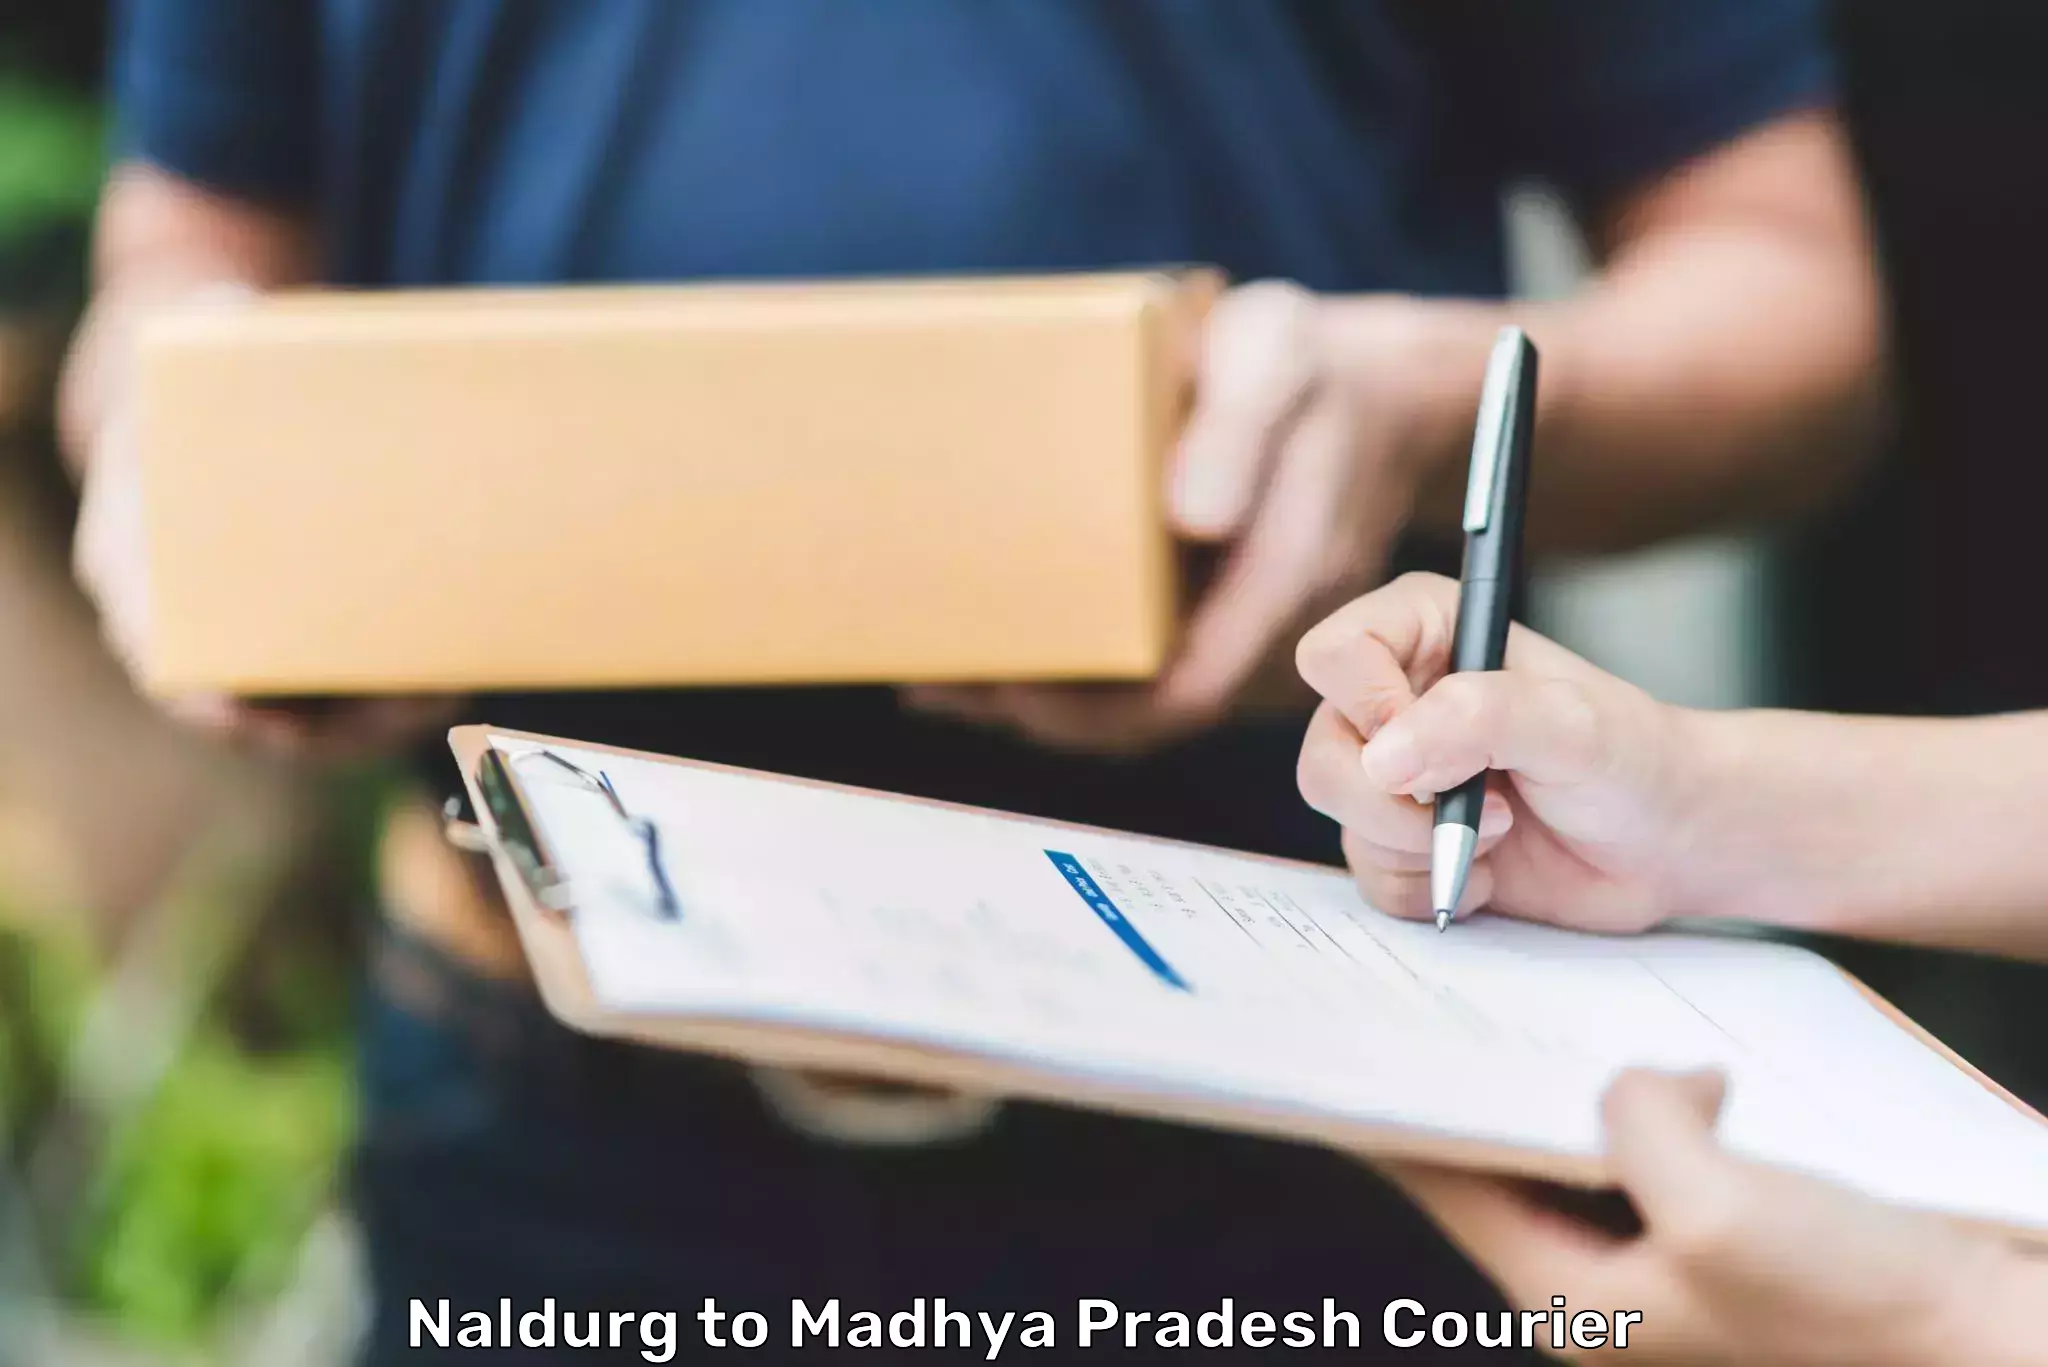 Quality courier services Naldurg to Satna